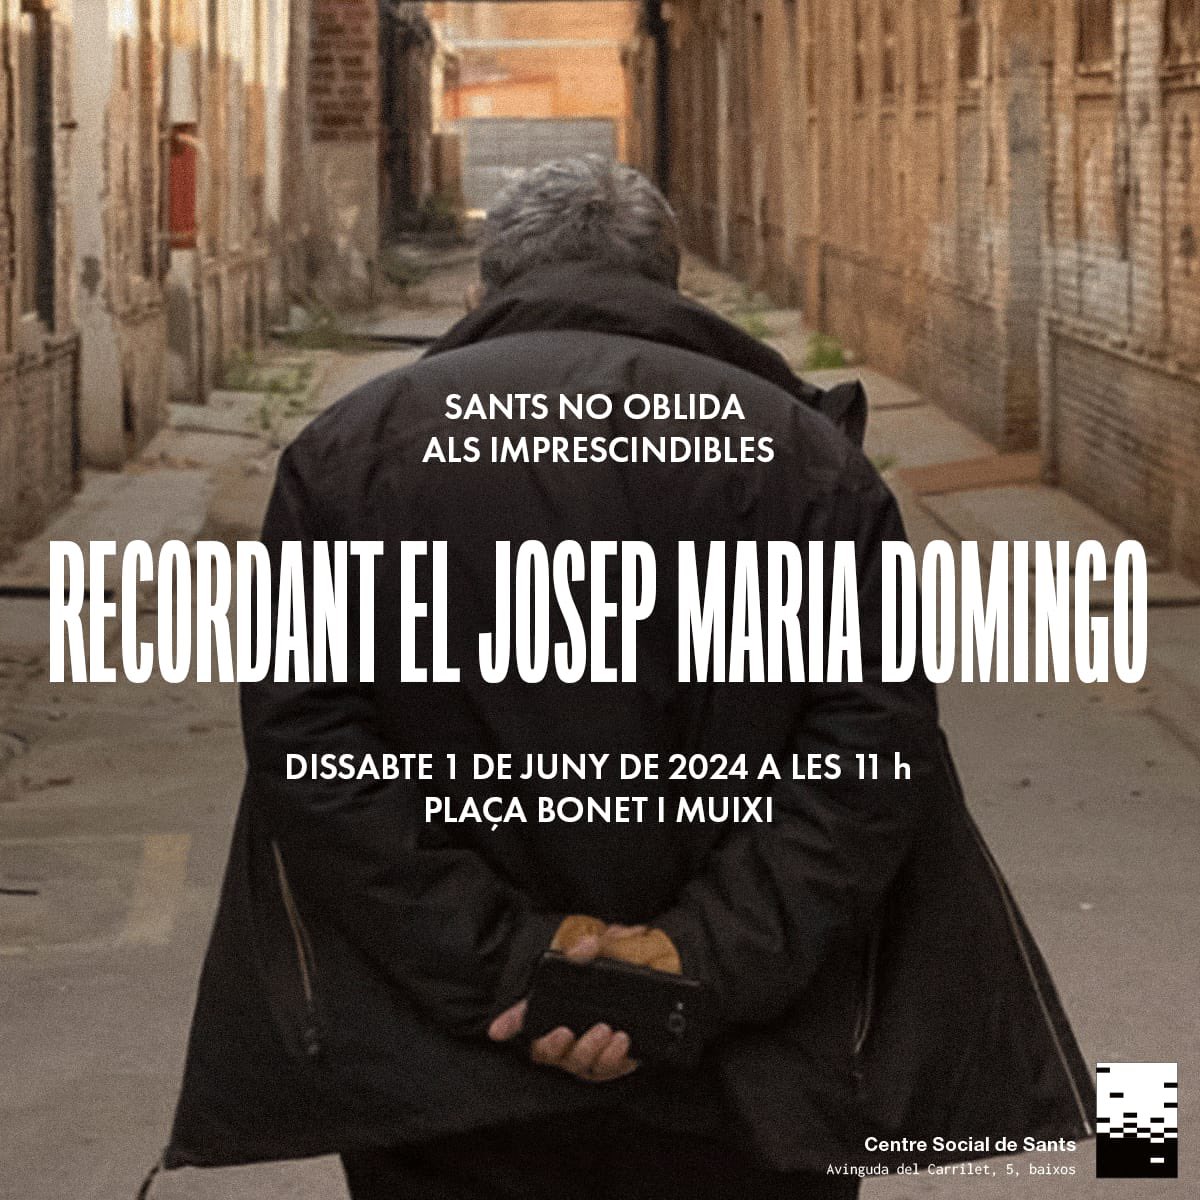 El proper dissabte es farà un acte en memòria de Josep Maria Domingo, reputat activista veïnal de #Sants que ens va deixar ara fa un any.

📍 1 de juny, 11h, a la plaça Bonet i Muixí

#fembarri 
@CentreSocSants